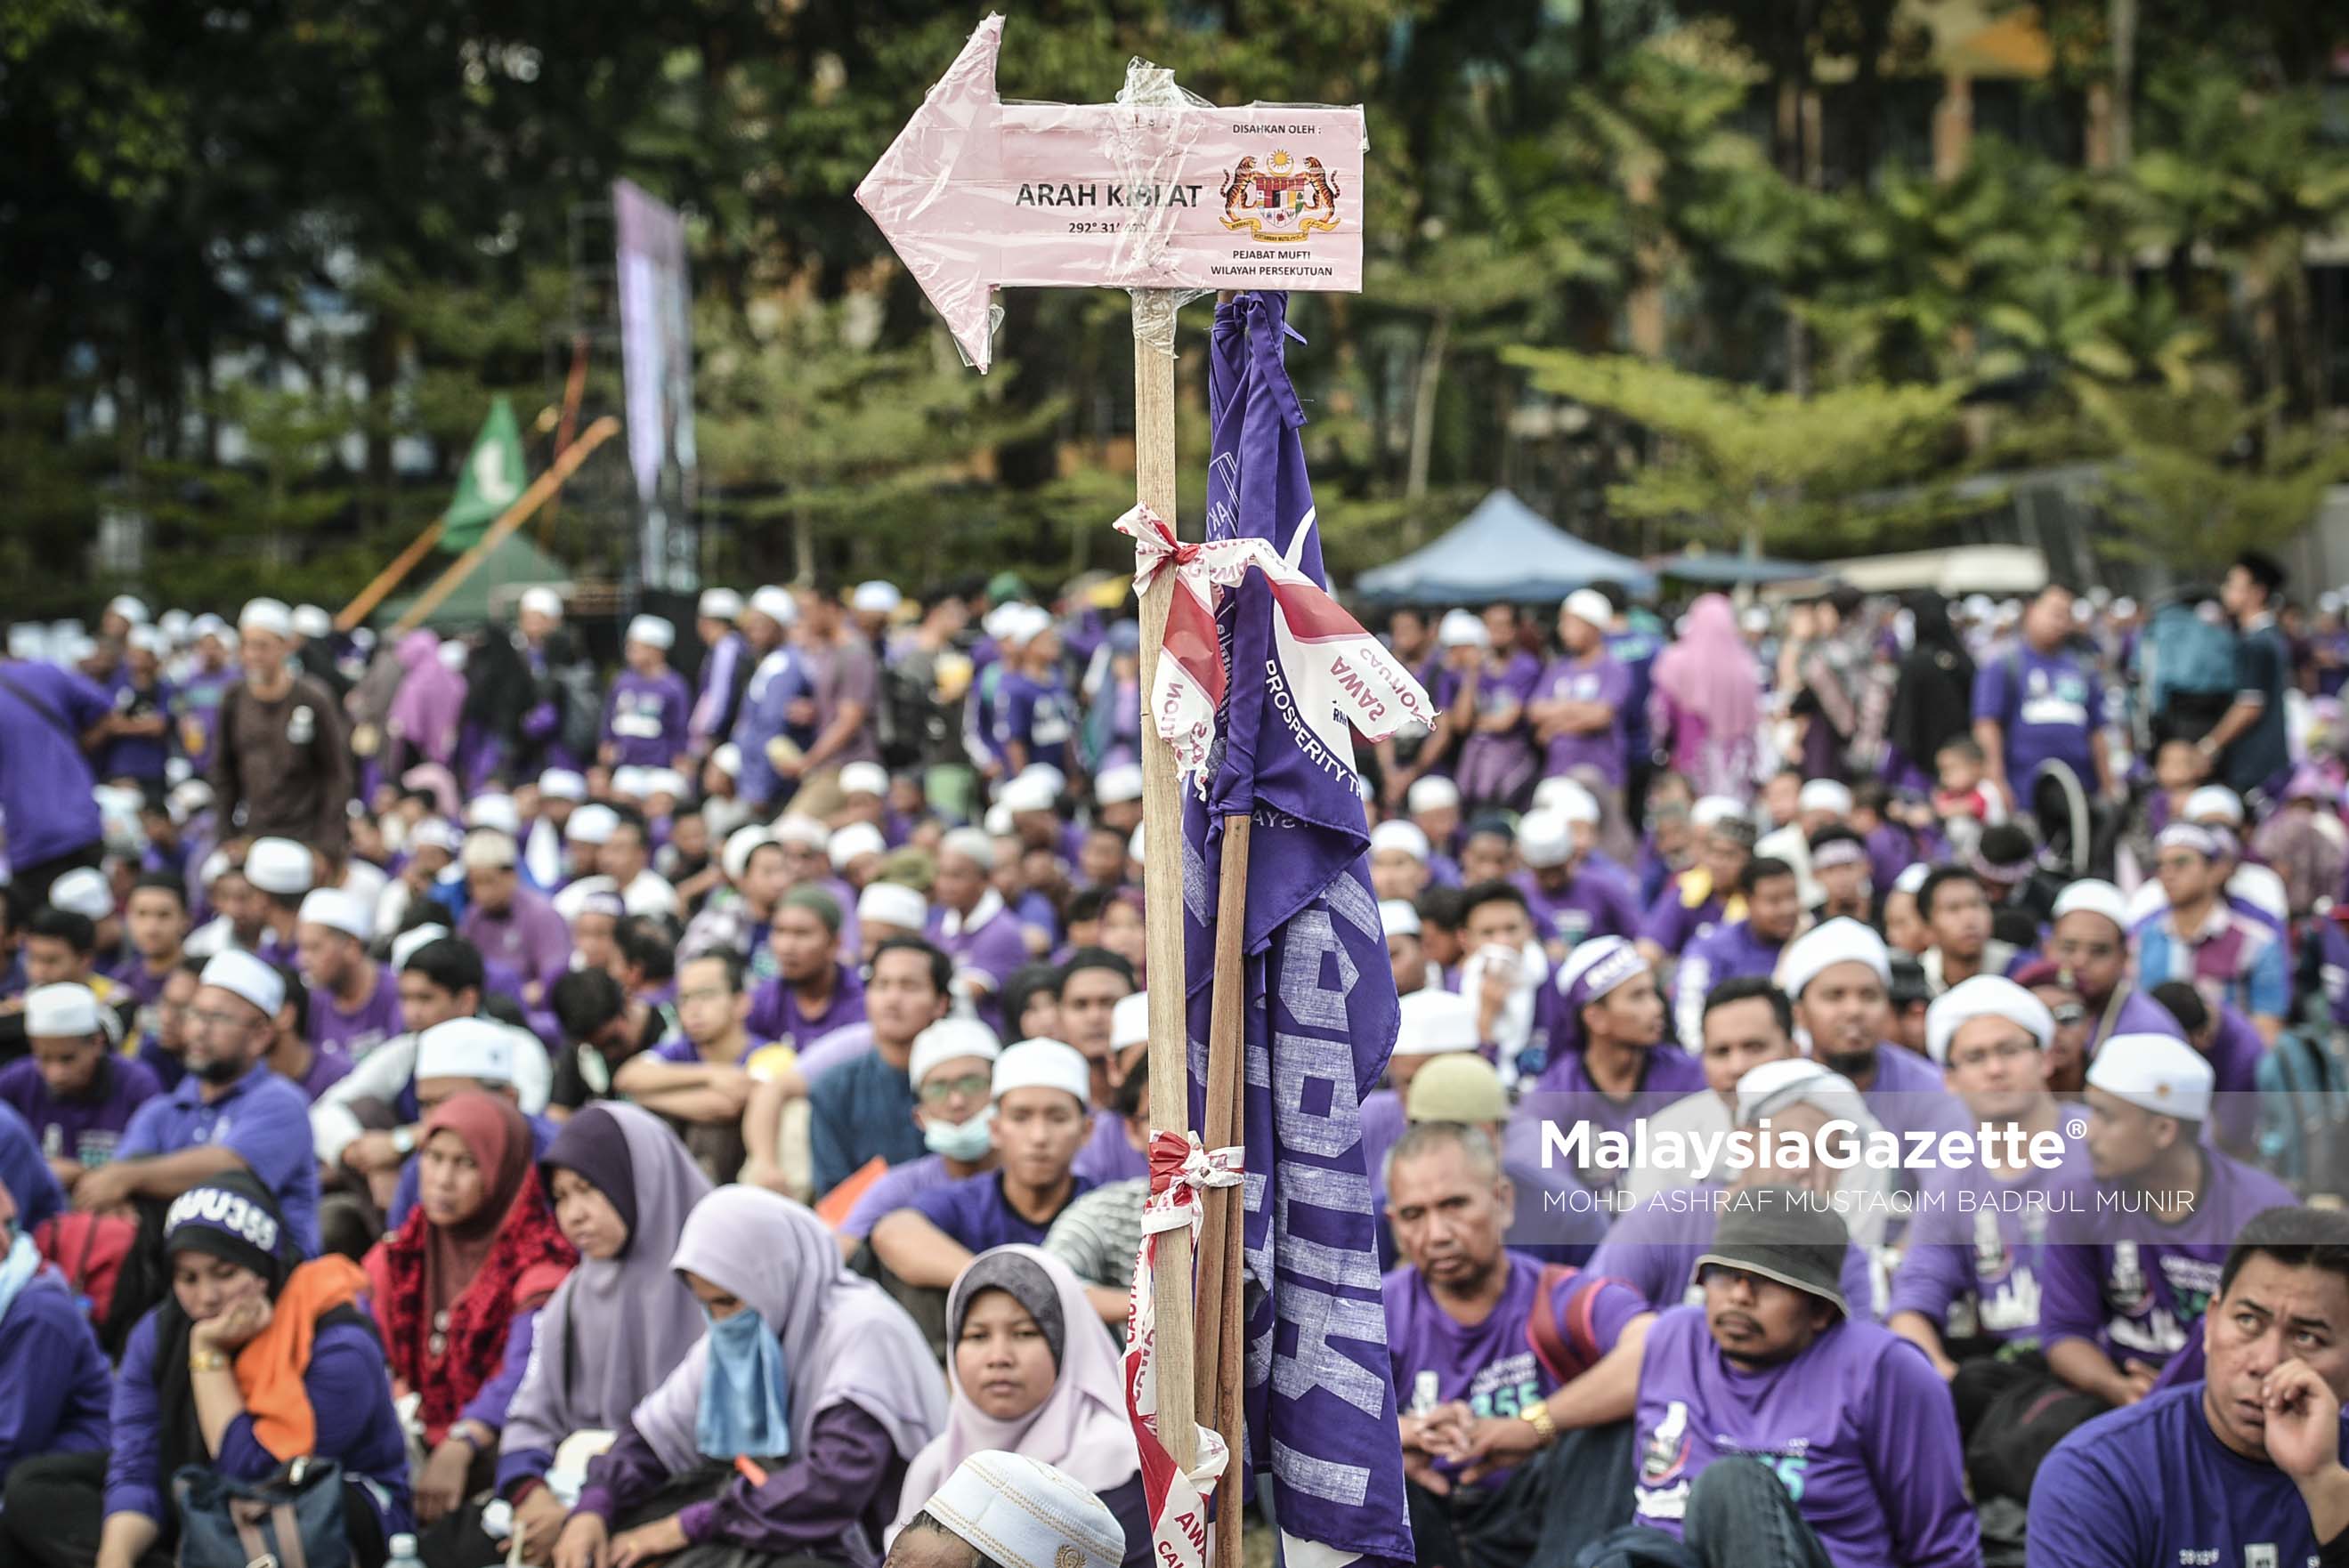 Sebuah papan tanda yang menunjukkan arah kiblat pada Himpunan RUU 355 di Padang Merbok, Kuala Lumpur. foto ASHRAF MUSTAQIM BADRUL MUNIR, 18 FEBRUARI 2017.